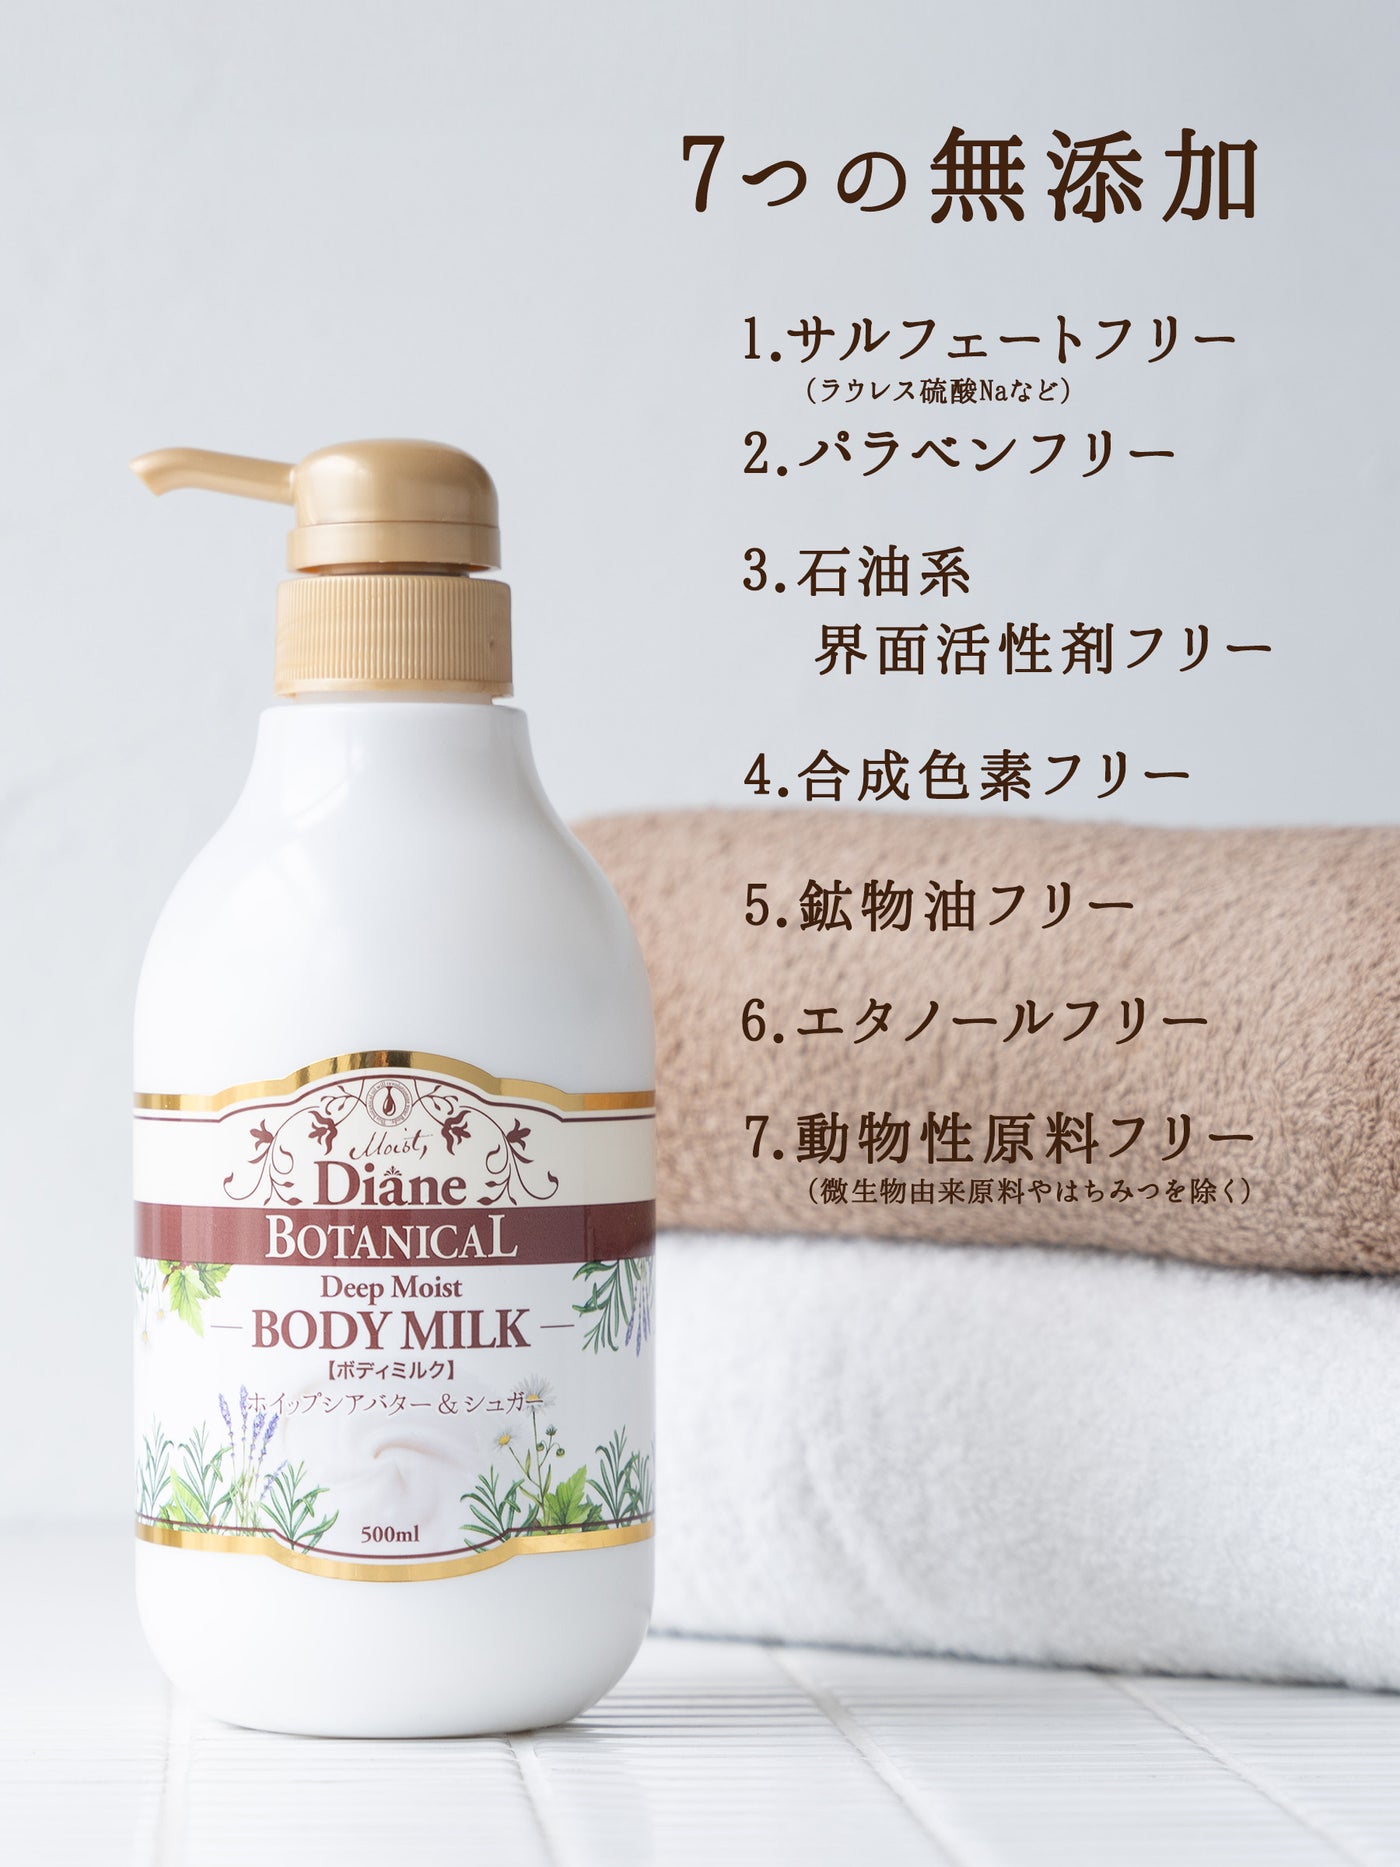 ボディミルク [敏感肌もリッチに潤う] ハニーオランジュの香り ダイアンボタニカル ディープモイスト 詰替 400mL